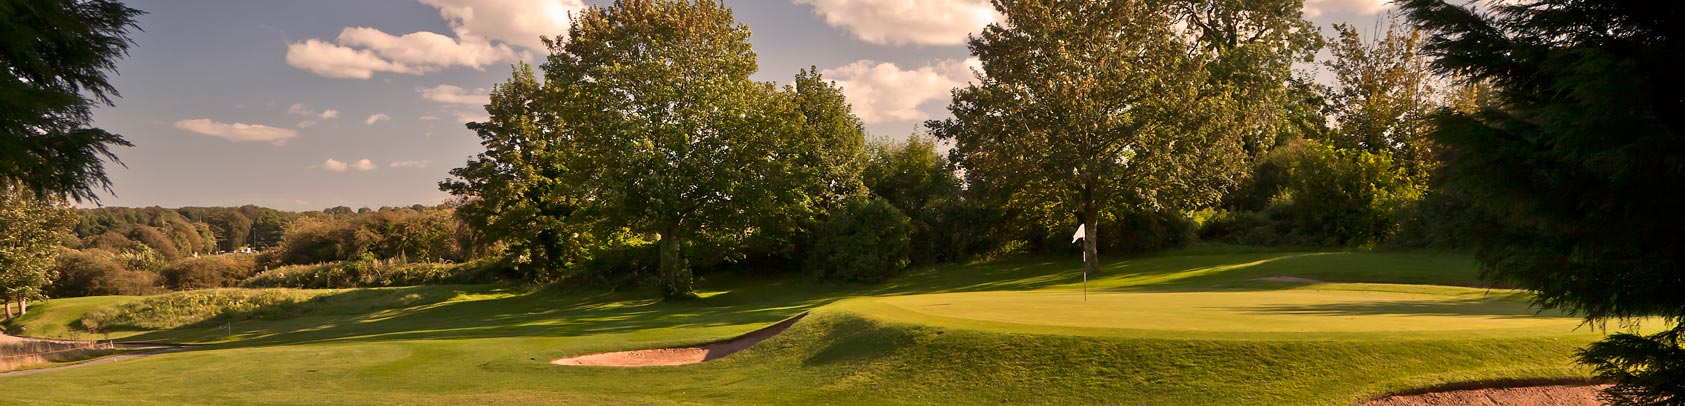 Golf Club Cardiff, Golf Club in Wales